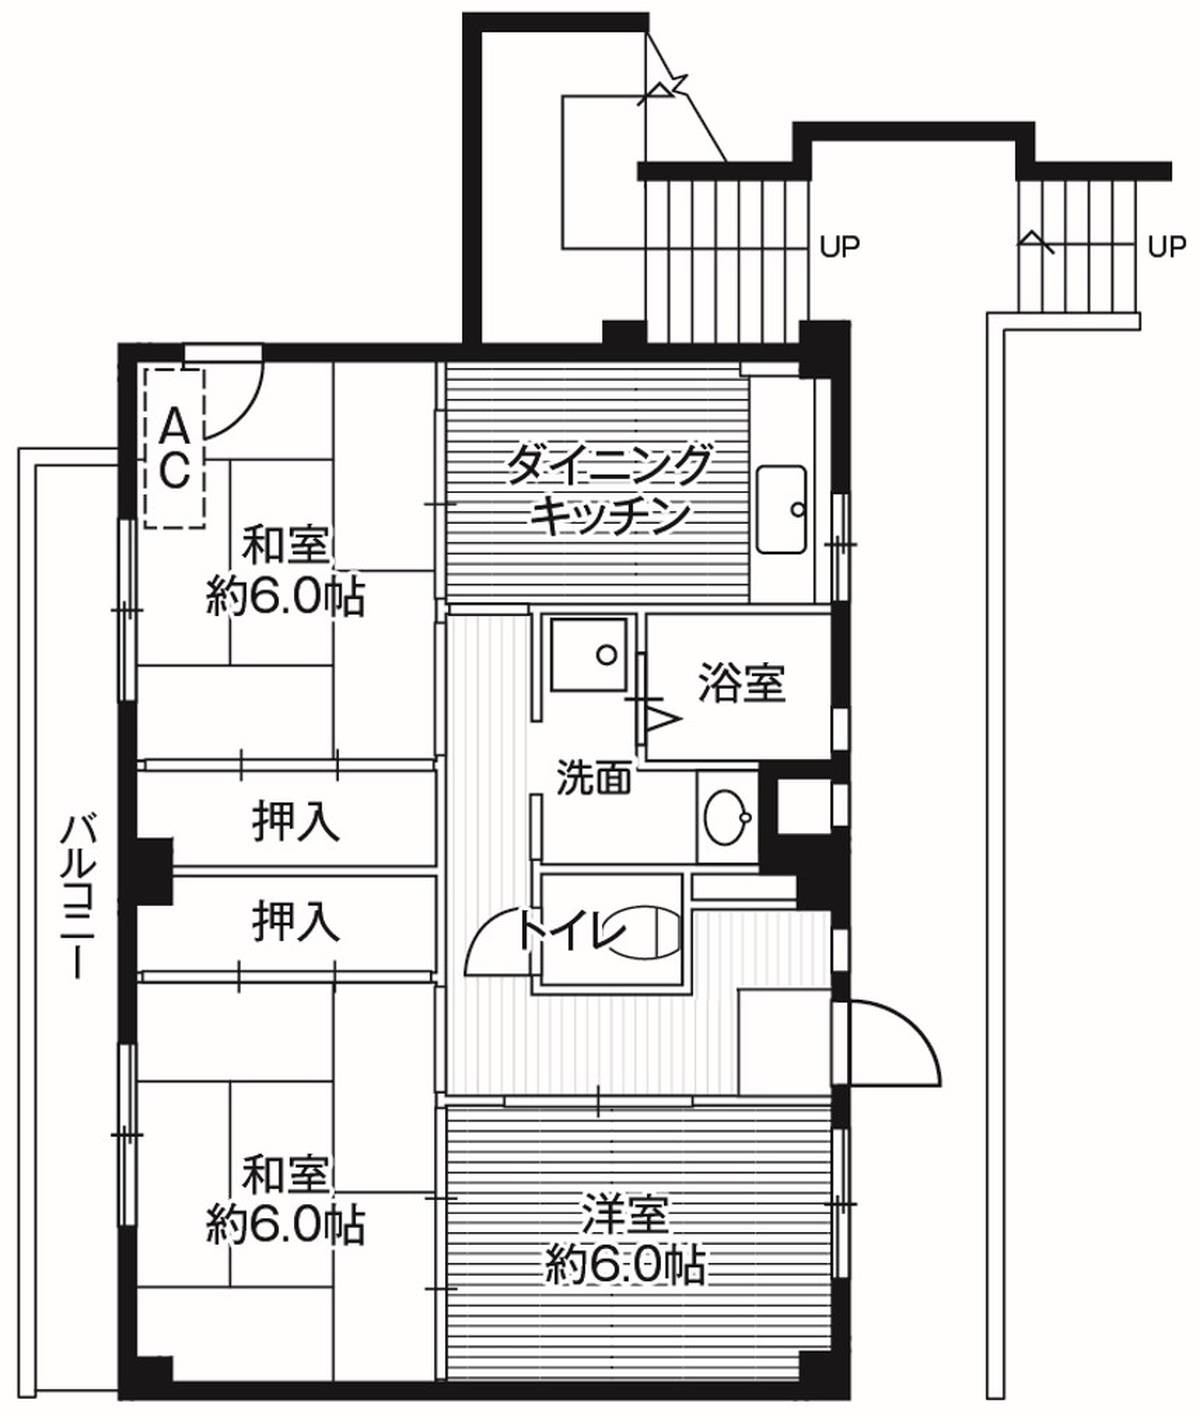 Sơ đồ phòng 3DK của Village House Chigusa ở Hanamigawa-ku